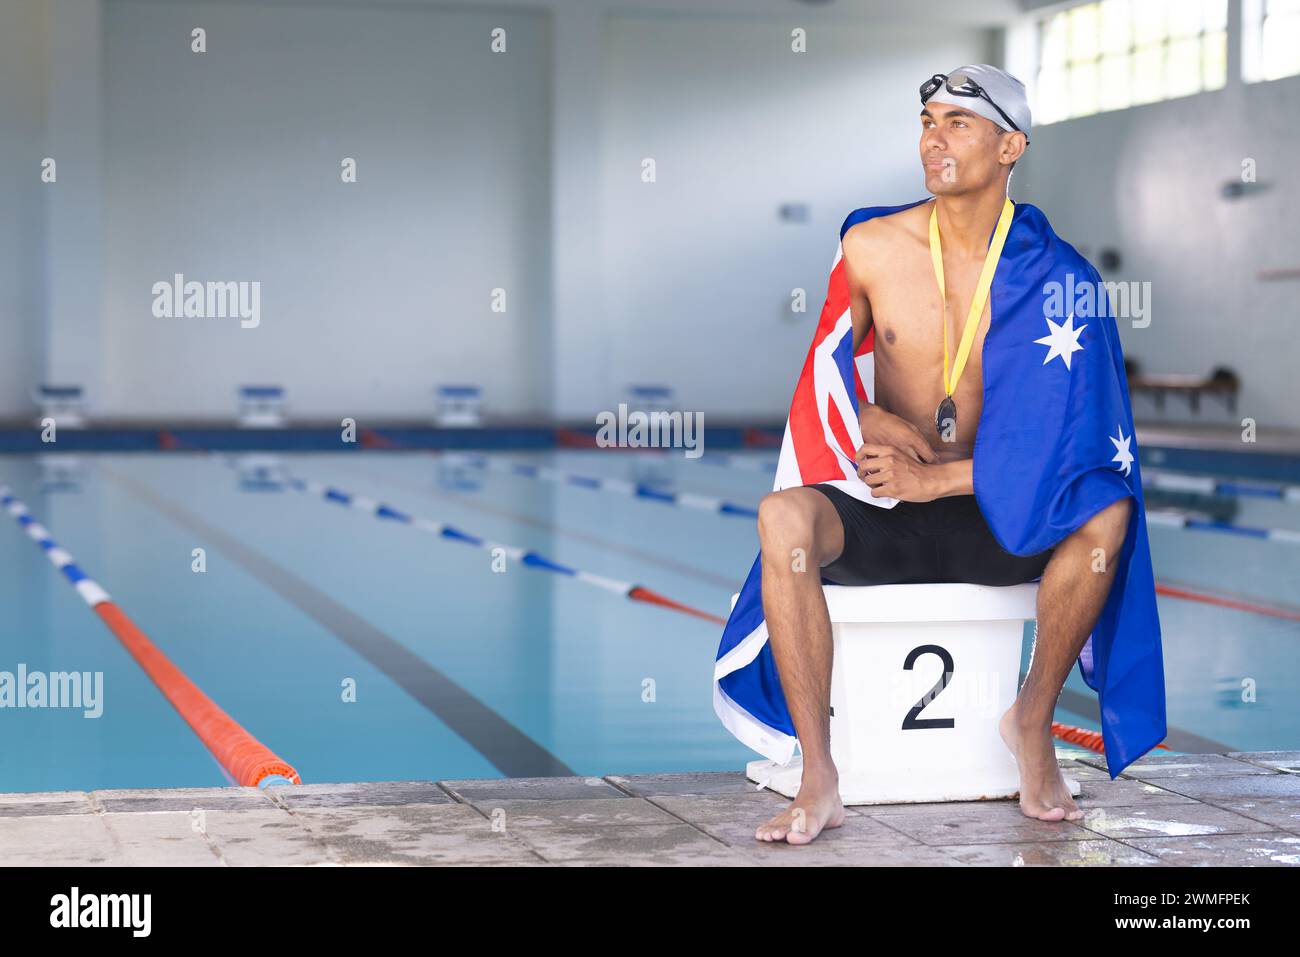 Il nuotatore avvolto da una bandiera australiana siede a bordo piscina con una medaglia, con spazio per copiare Foto Stock